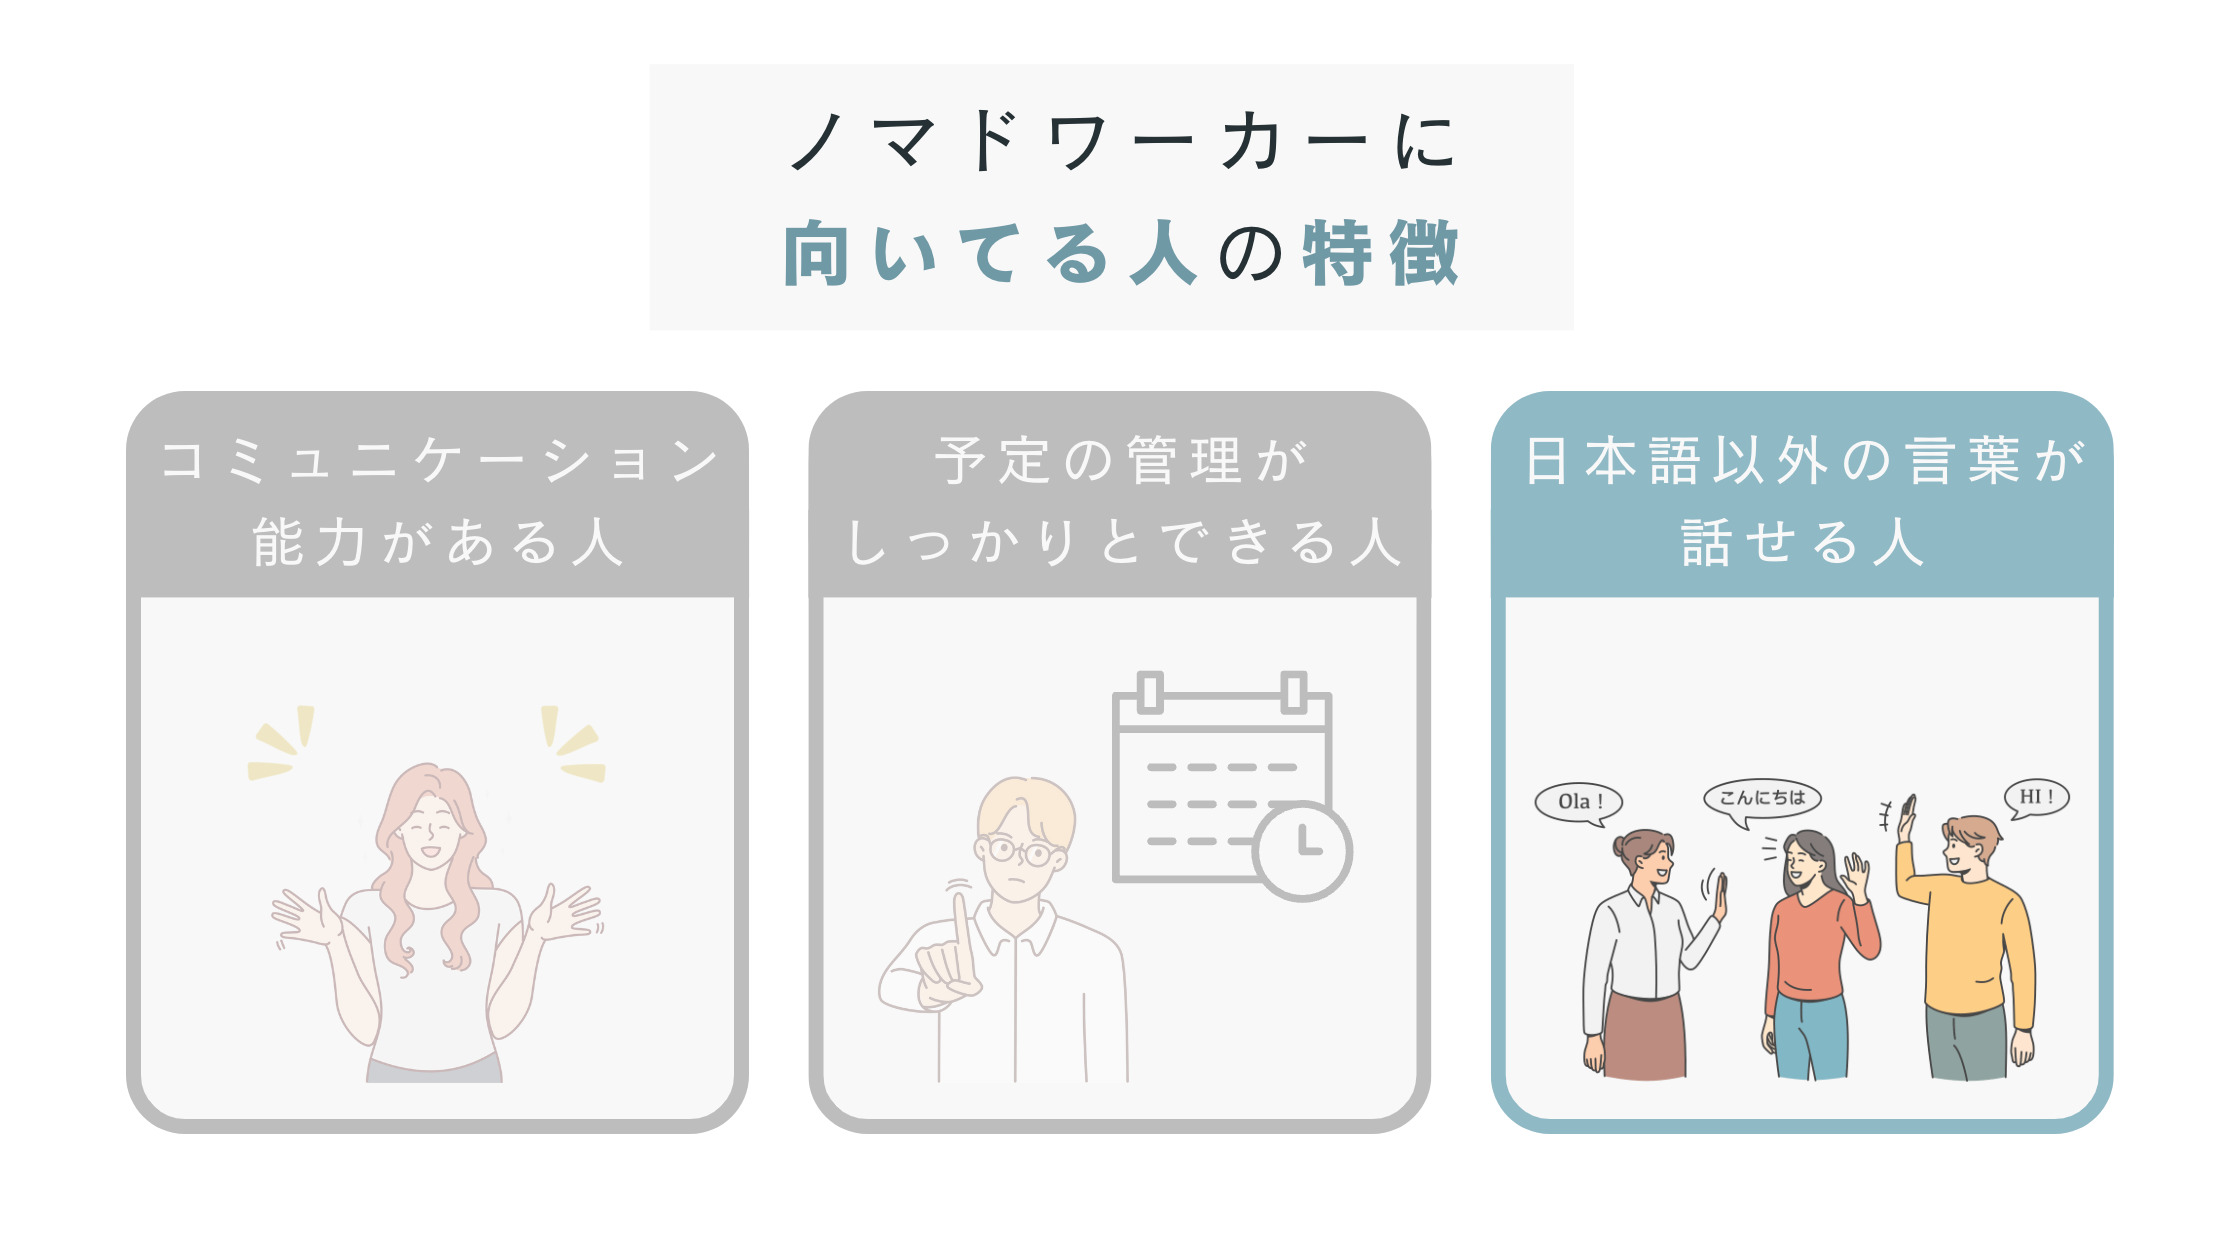 英語など、日本語以外の言葉が話せる人はノマドワーカーに向いている